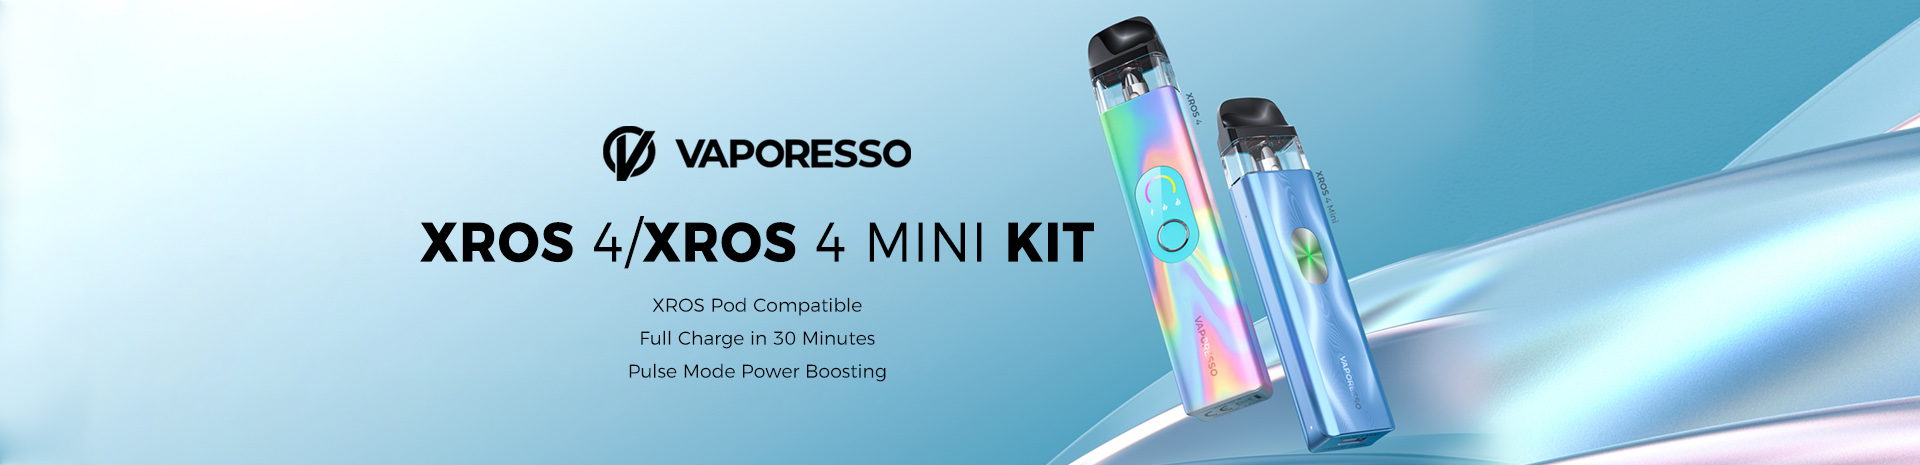 Vaporesso XROS 4 and XROS 4 Mini Kit